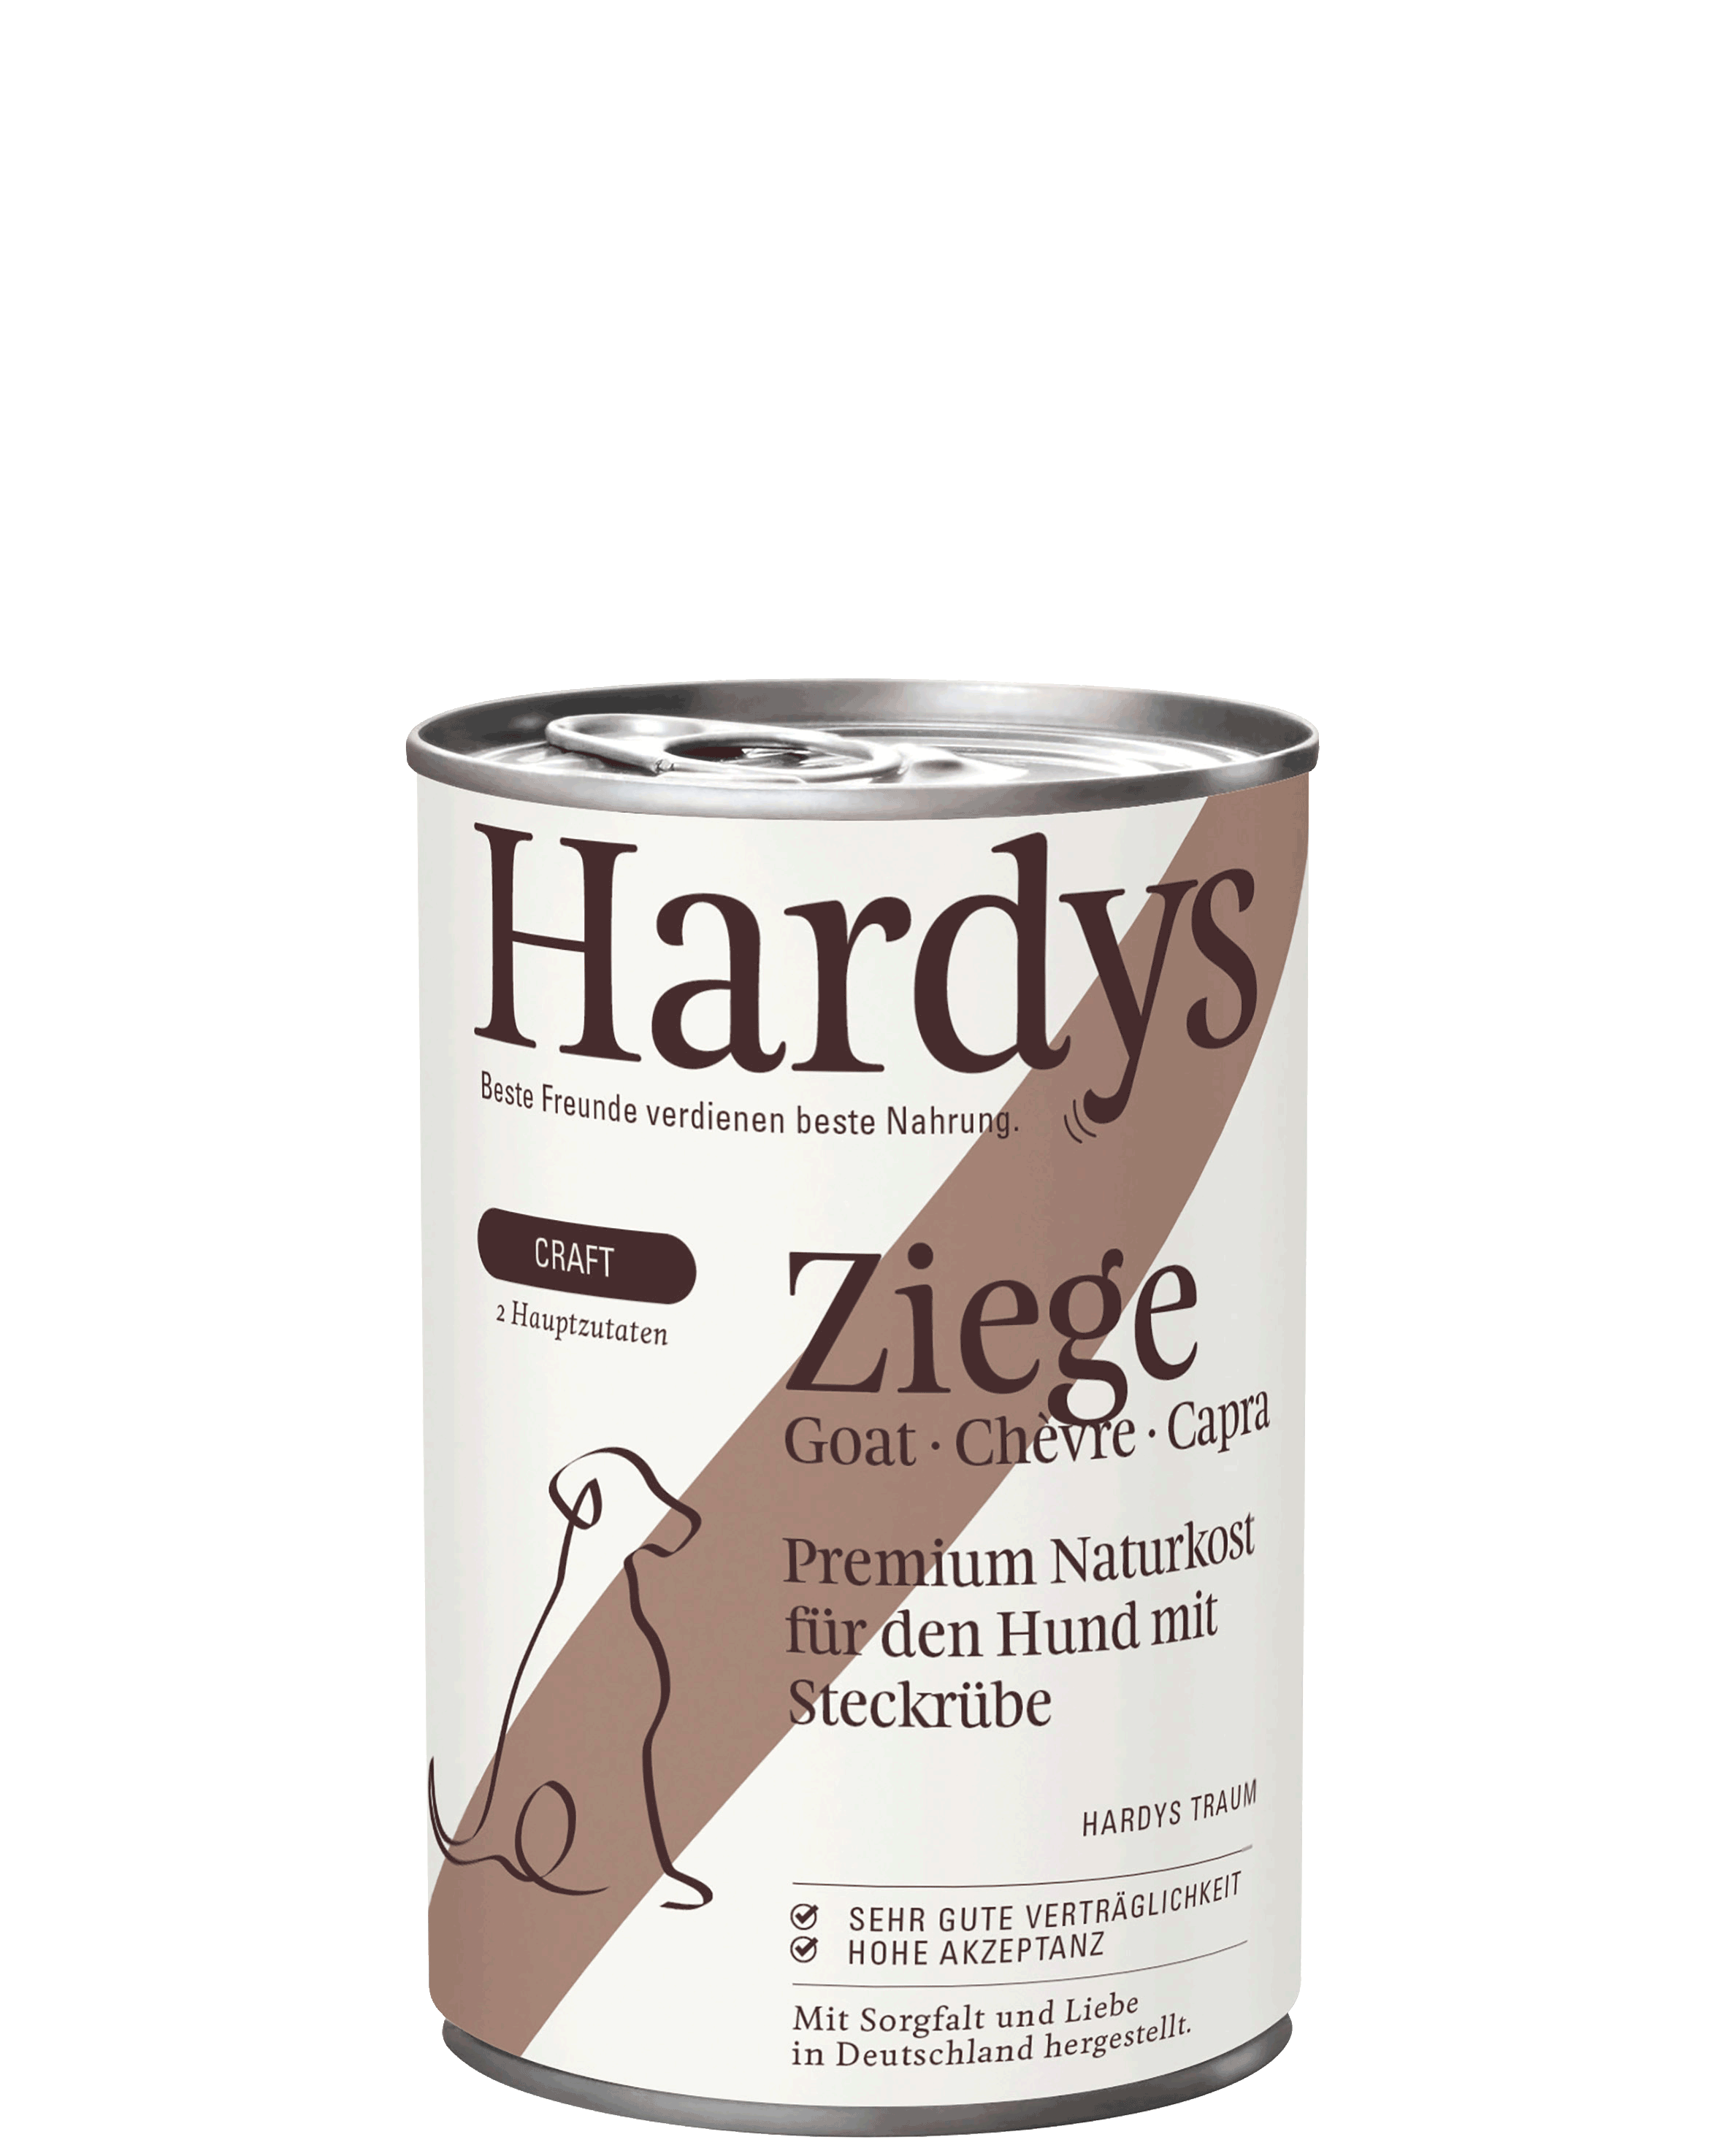 Hardys Craft Ziege mit Steckrübe, 400 g